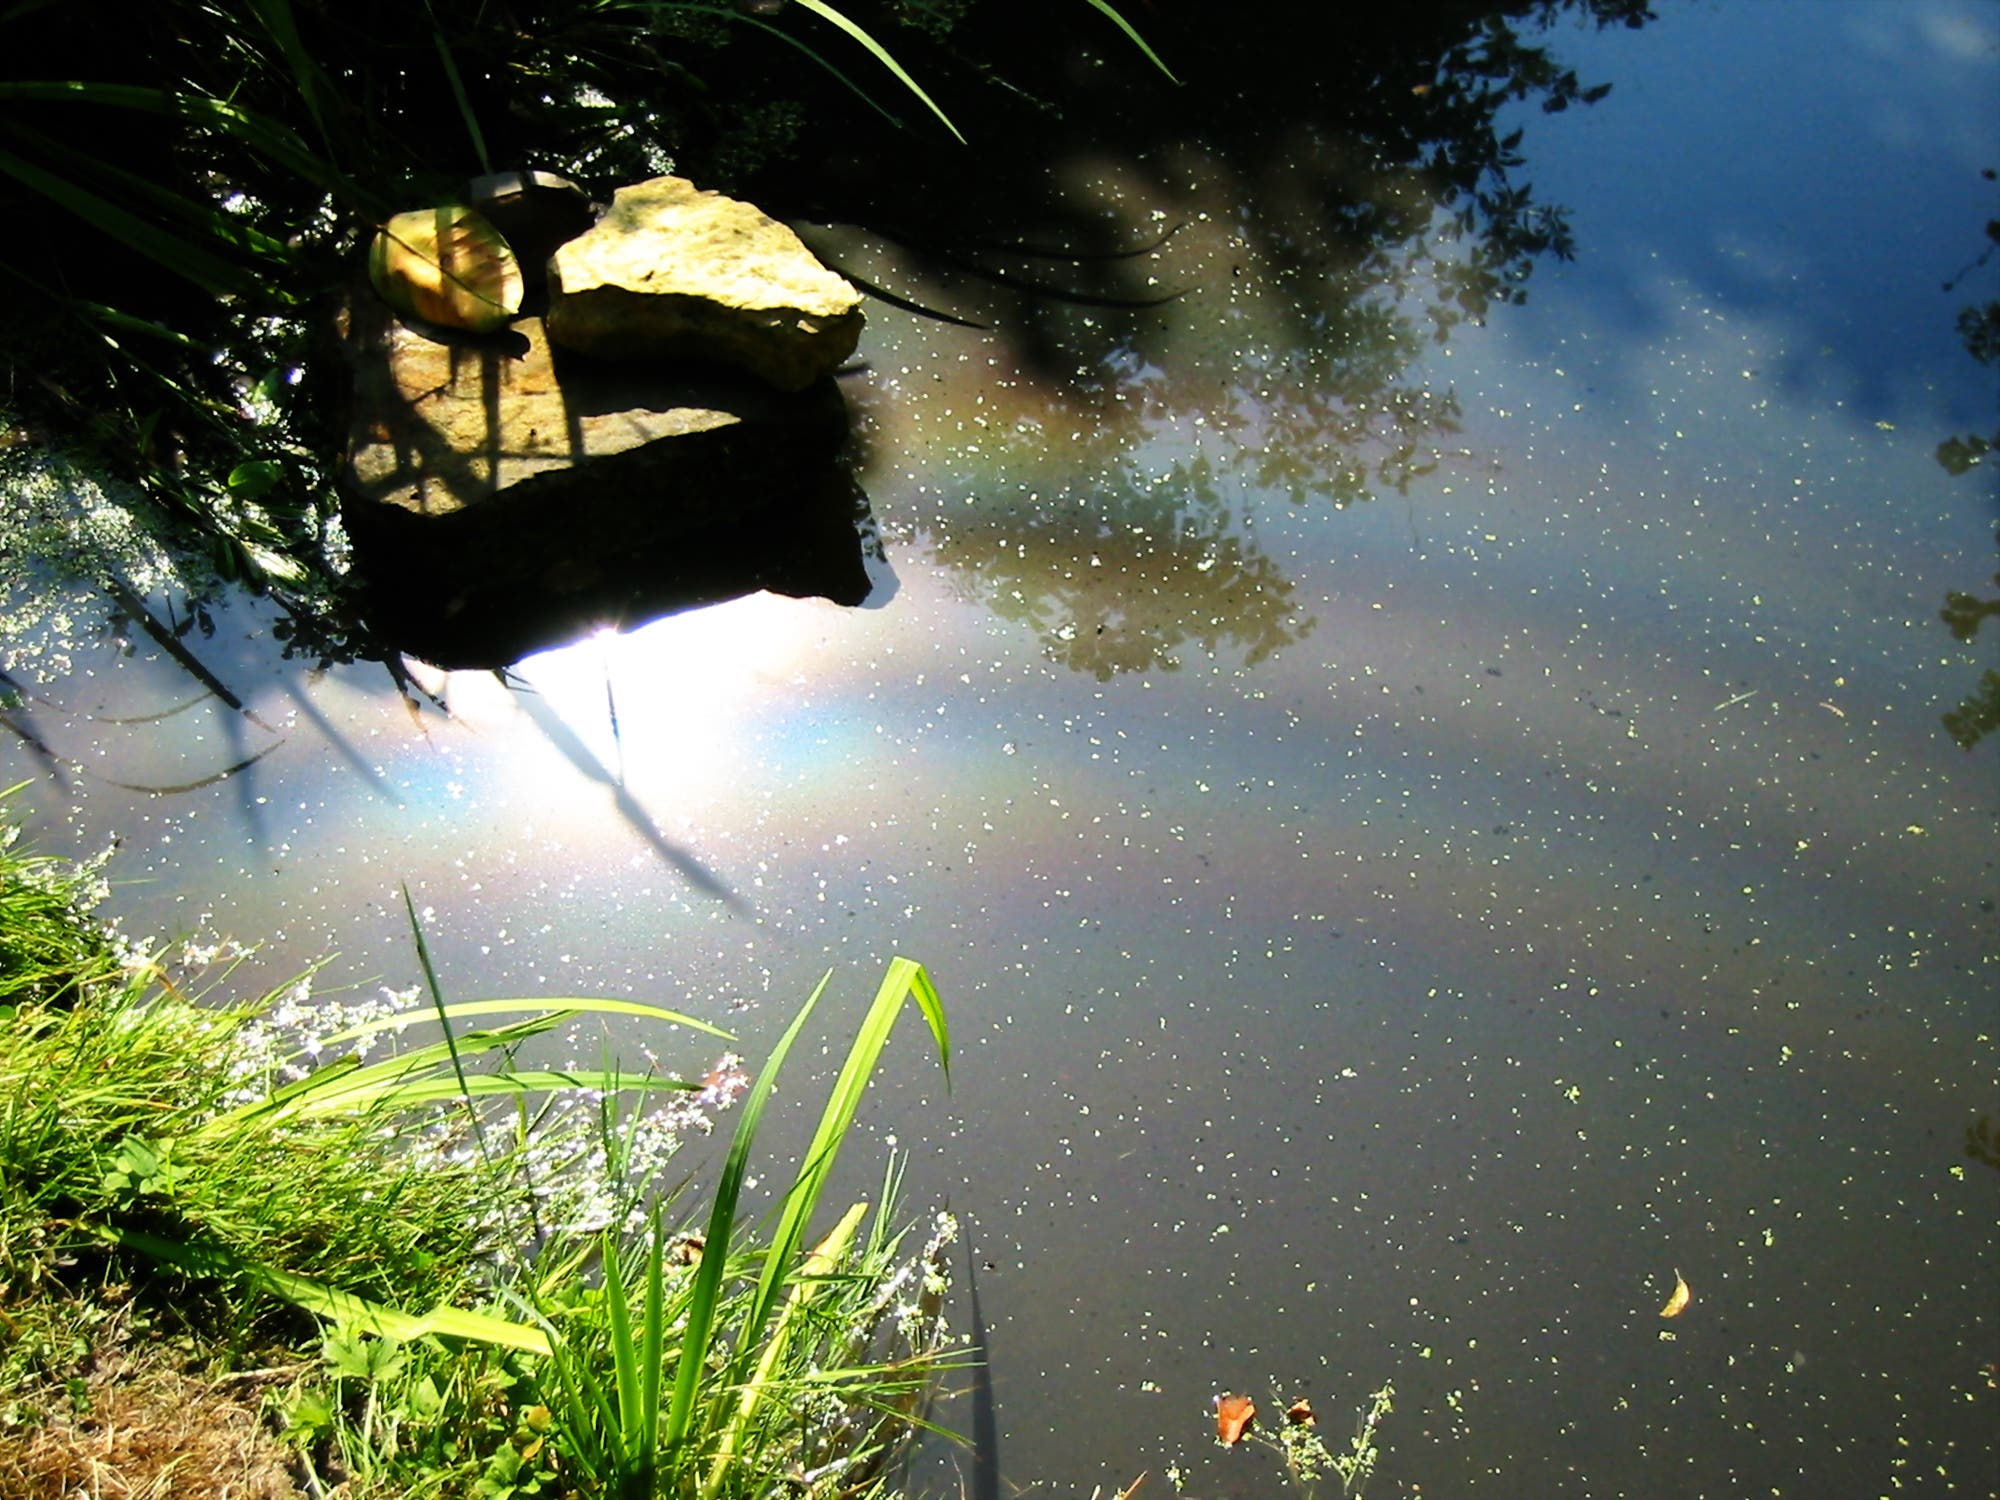 Sonnenreflex liegt auf einem der Bögen, die sich um ein fiktives Zentrum außerhalb des Teichs krümmen